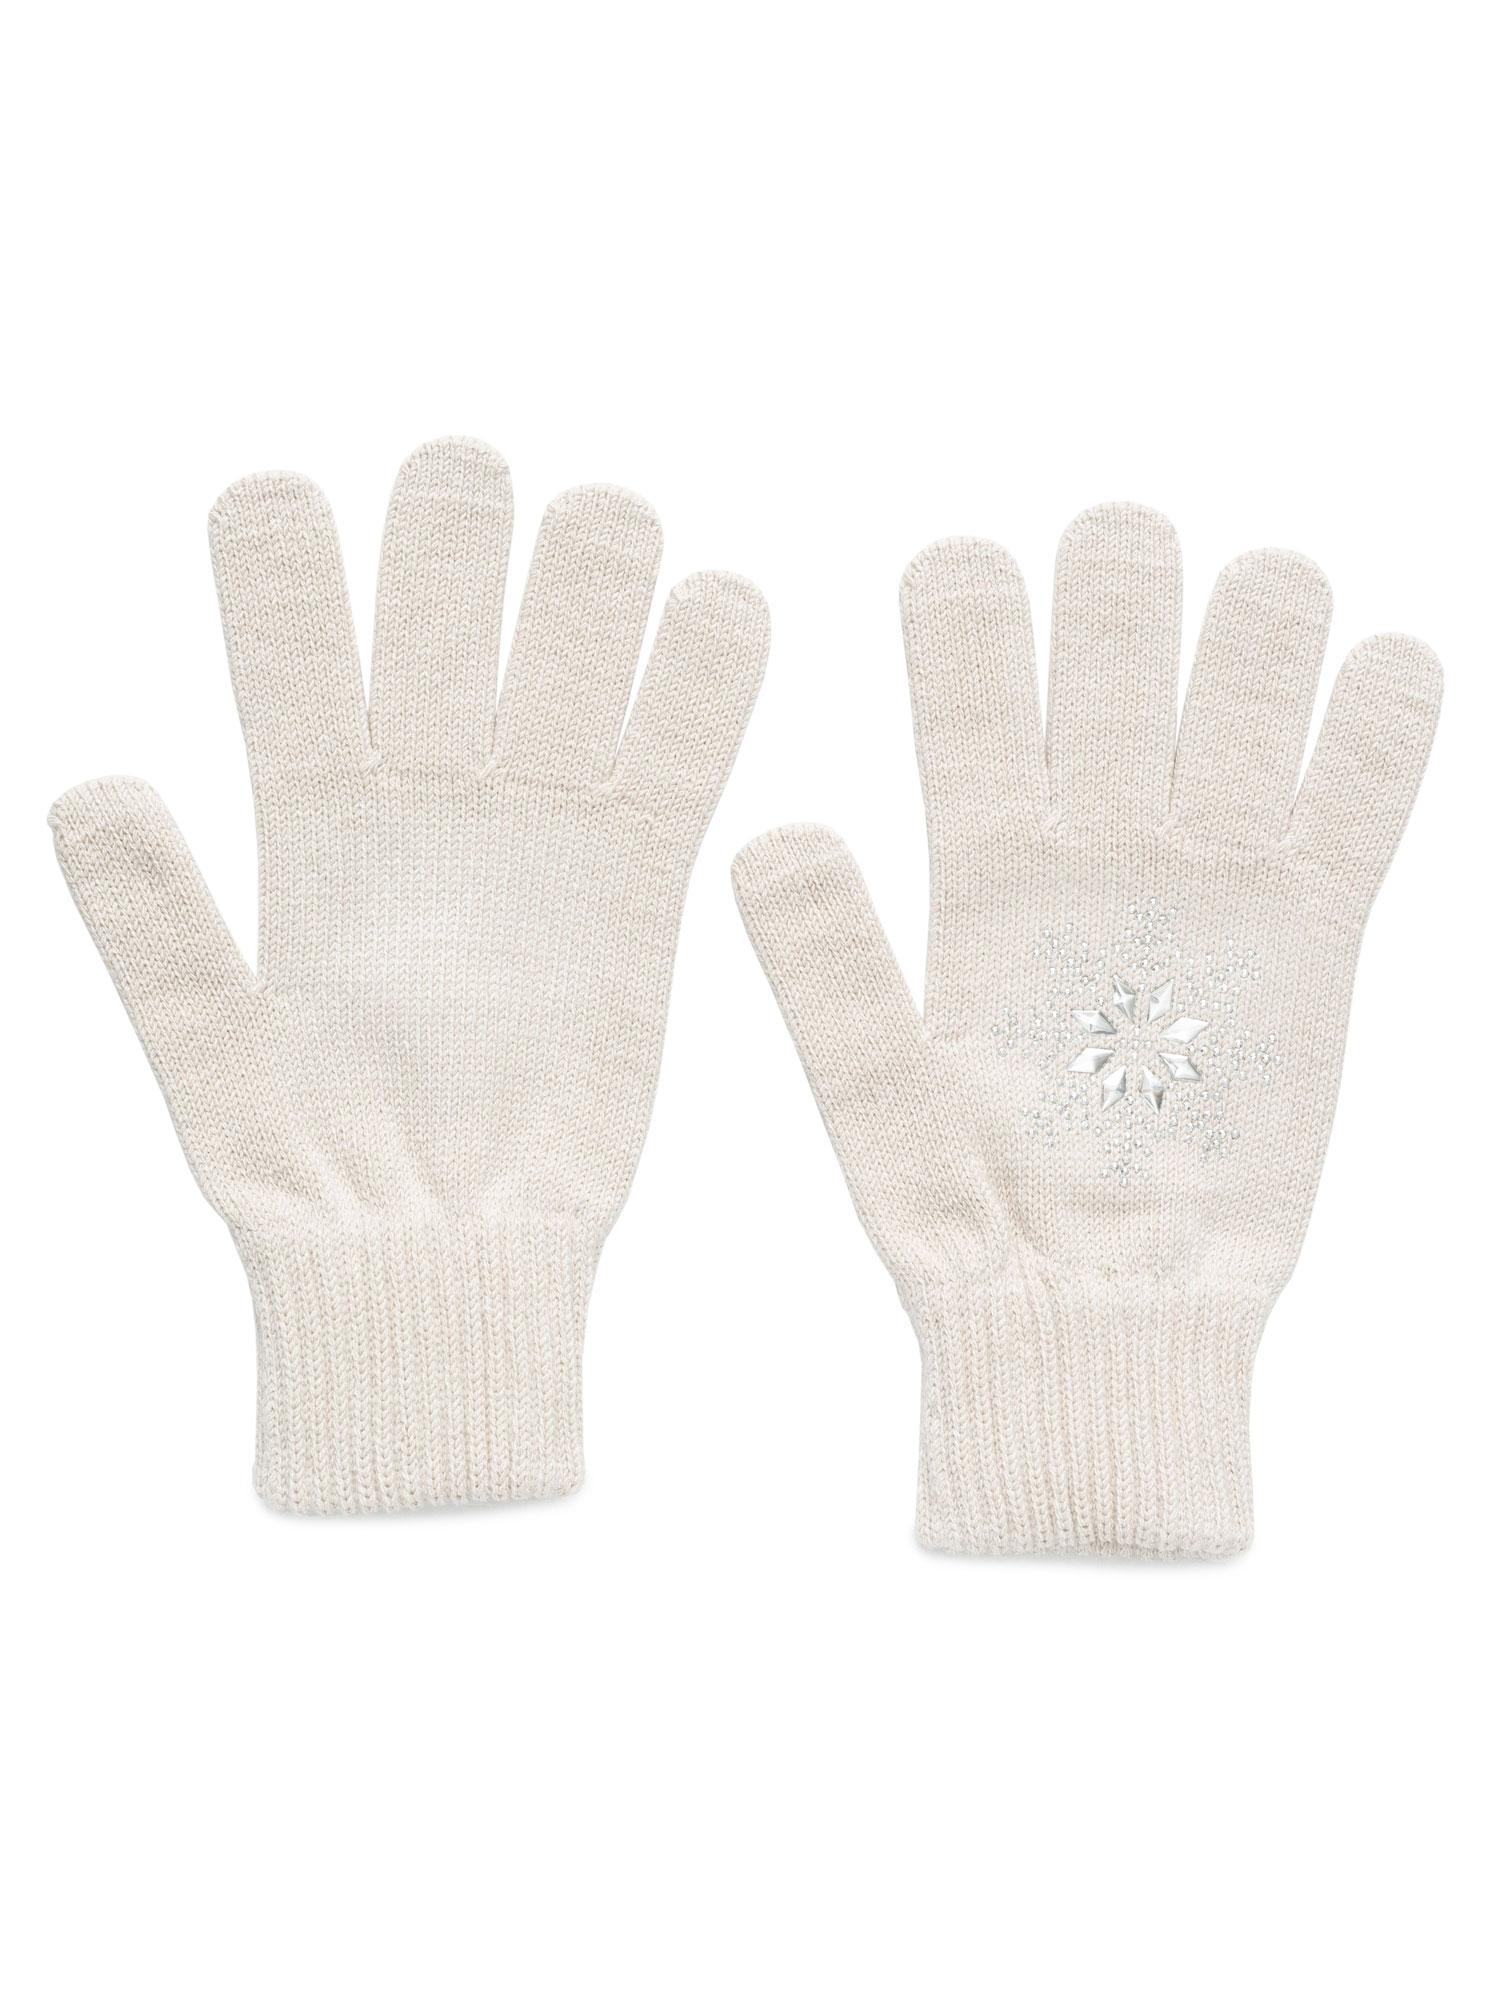 BRILLE Ženske rukavice Women's gloves bež